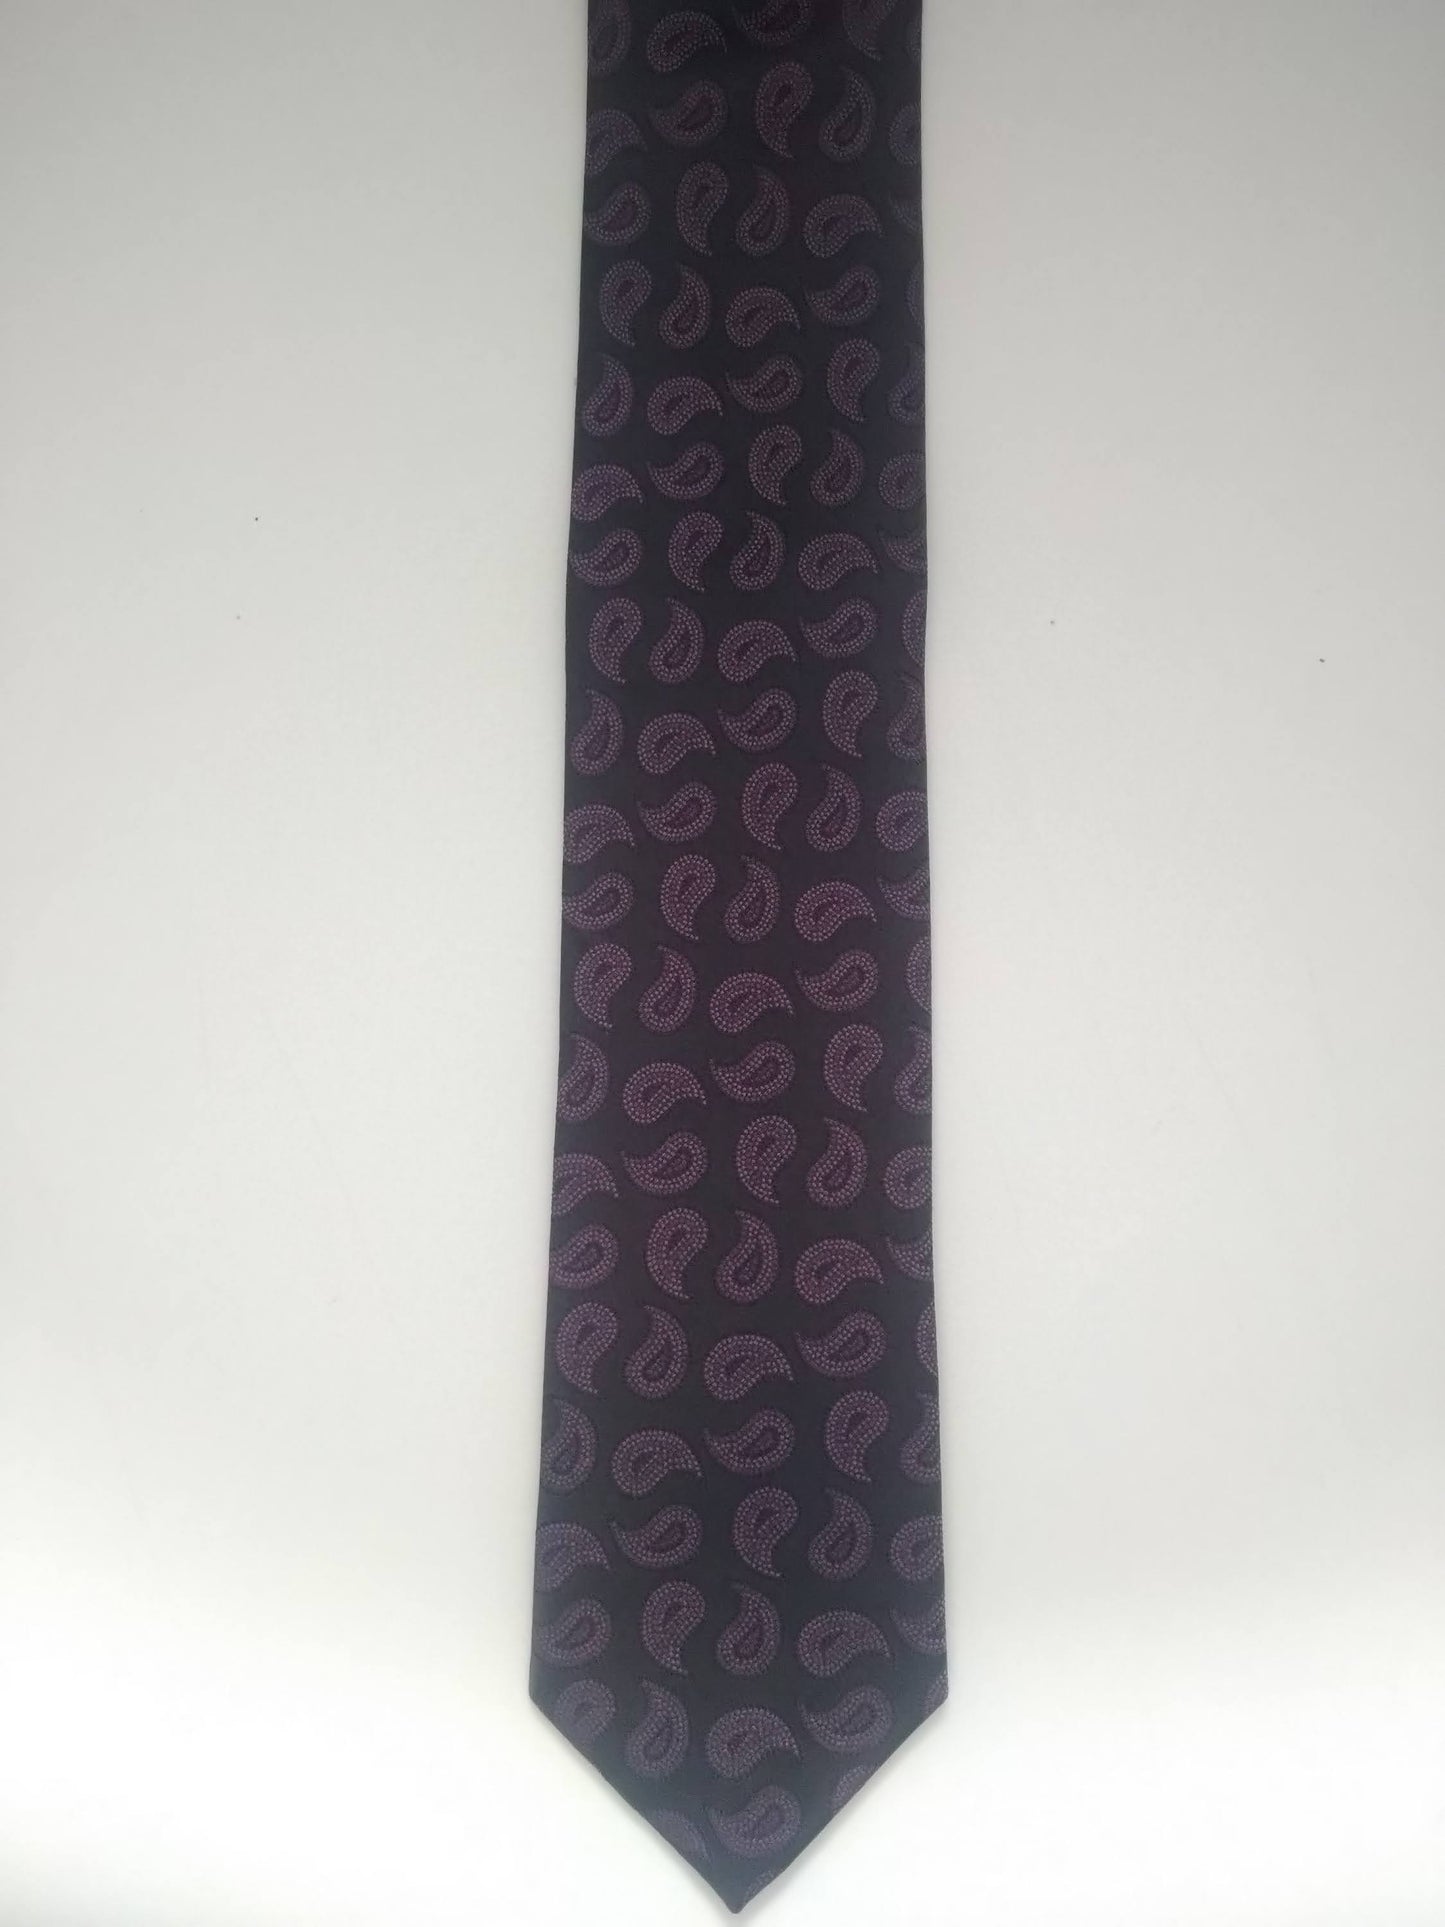 Cravatta vintage Motivo nero viola. Seta